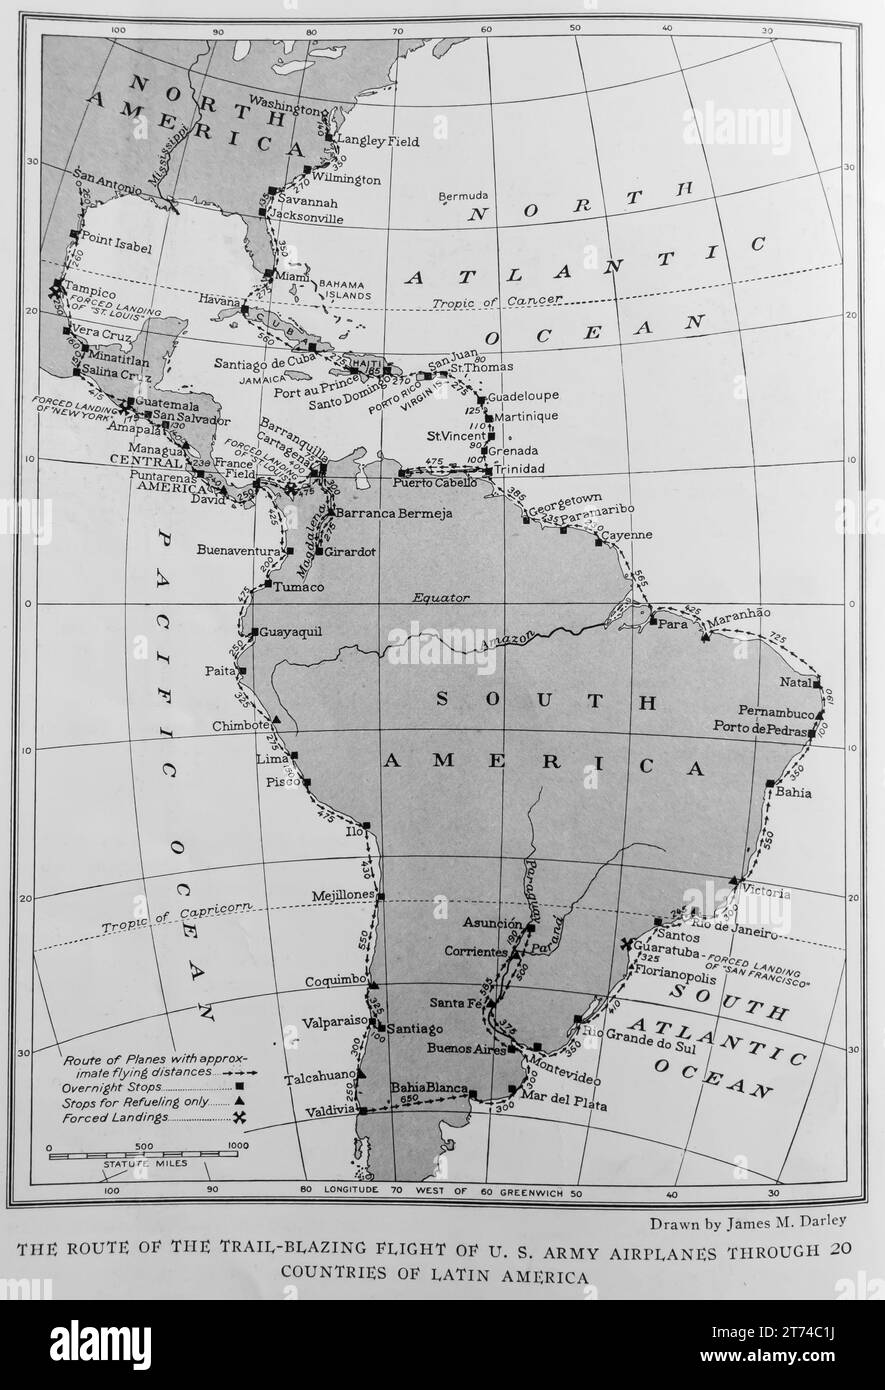 1927 La ruta de los aviones del Ejército de EE.UU. A través de 20 países de América Latina mapa publicado en una revista NatGeo 1927 Foto de stock